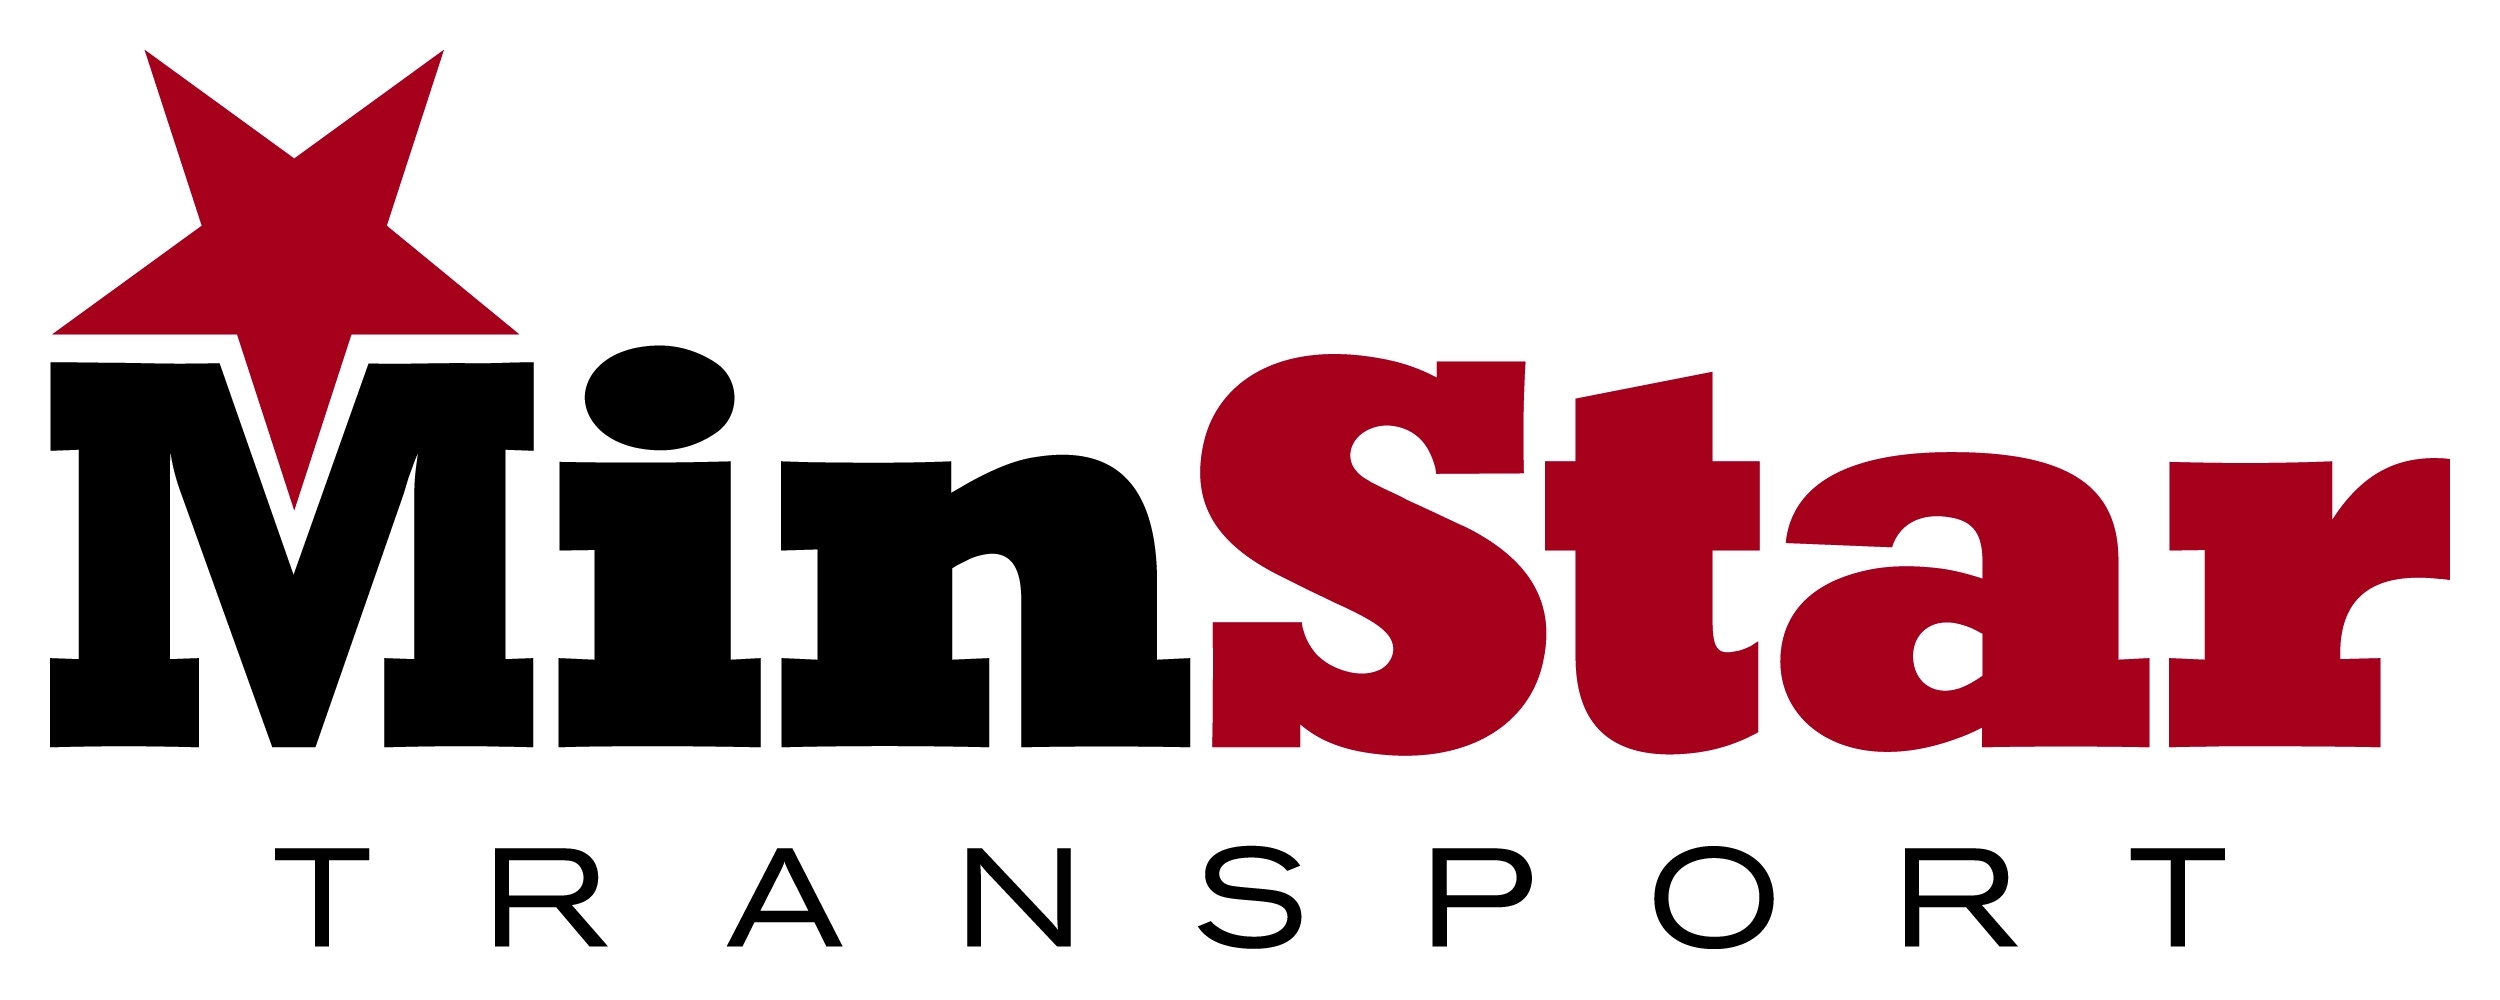 Minstar Transport